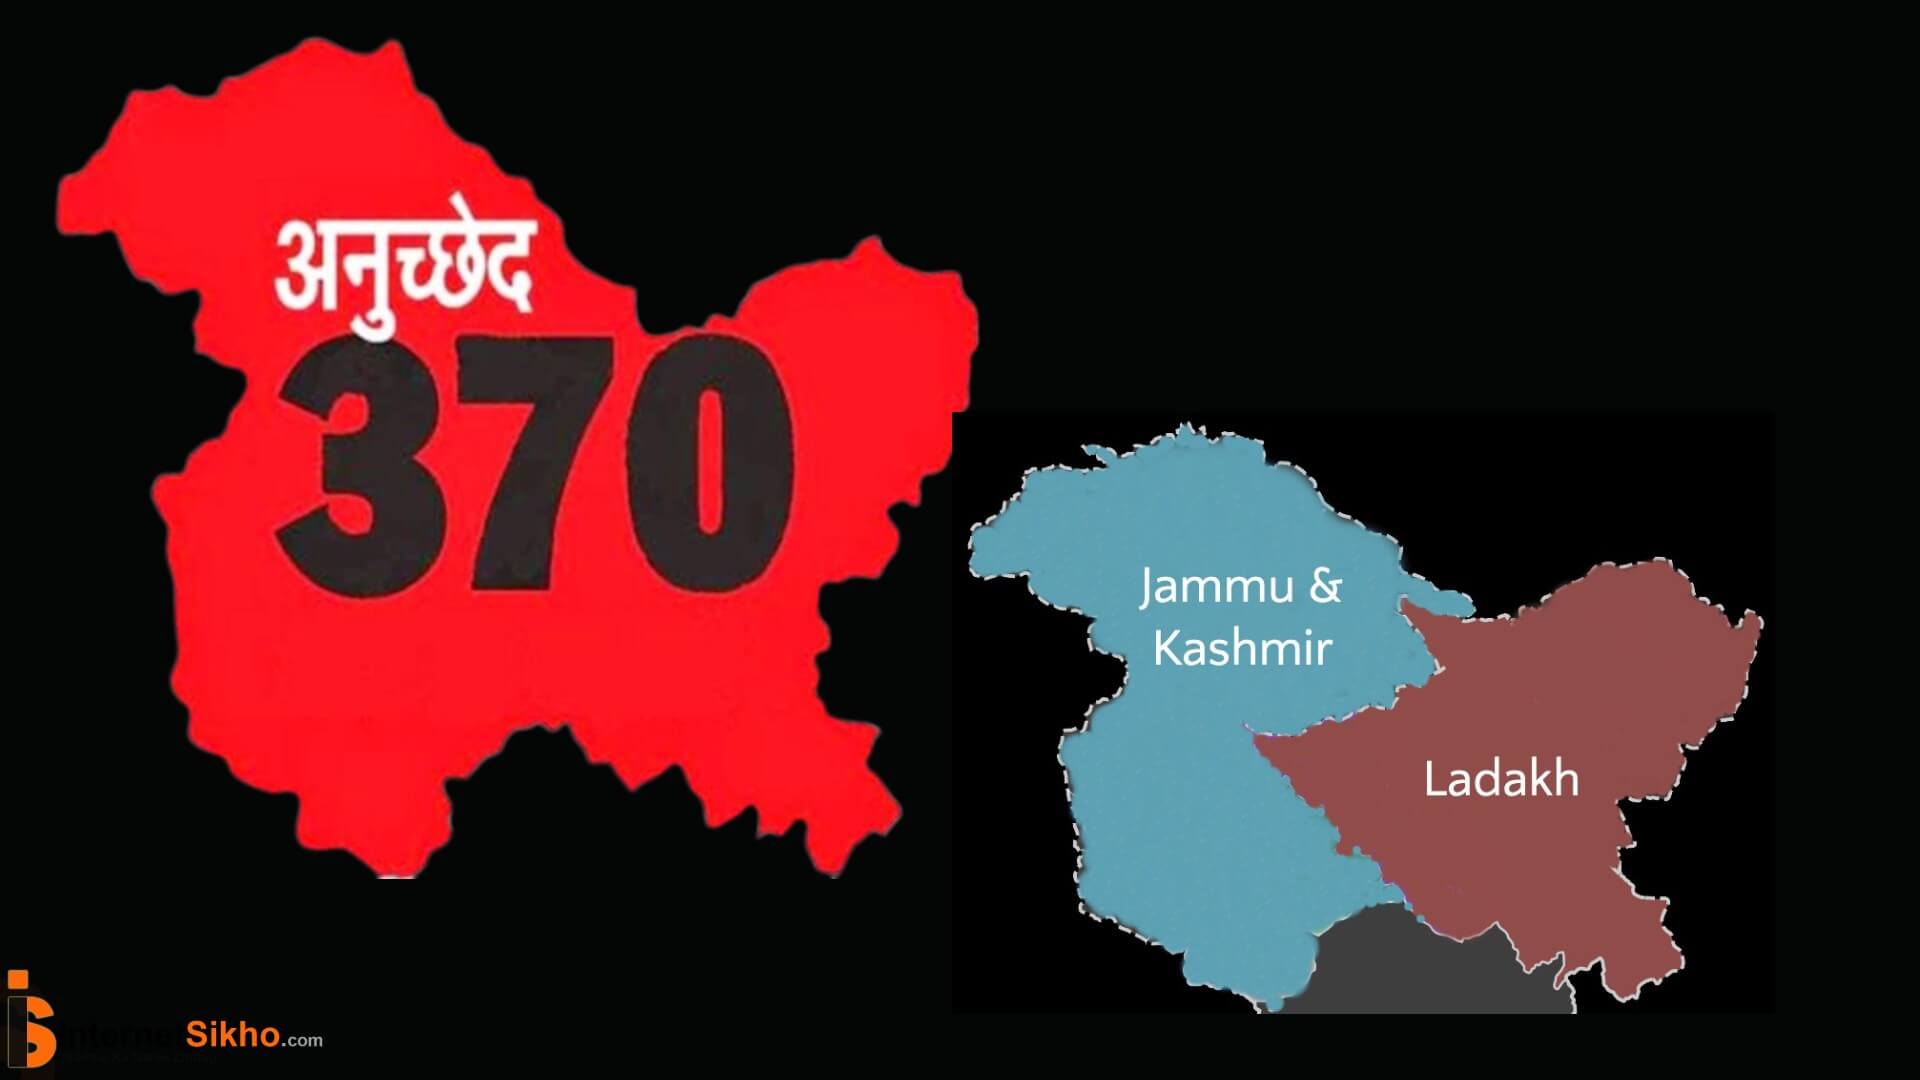 धारा 370 क्या है?धारा 370 कश्मीर में कैसे लागू हुआ था?धारा 370 के वजह से क्या फायदा और क्या नुकसान है?भारत के दुसरे राज्य से कश्मीर अलग क्यों है?धारा 370